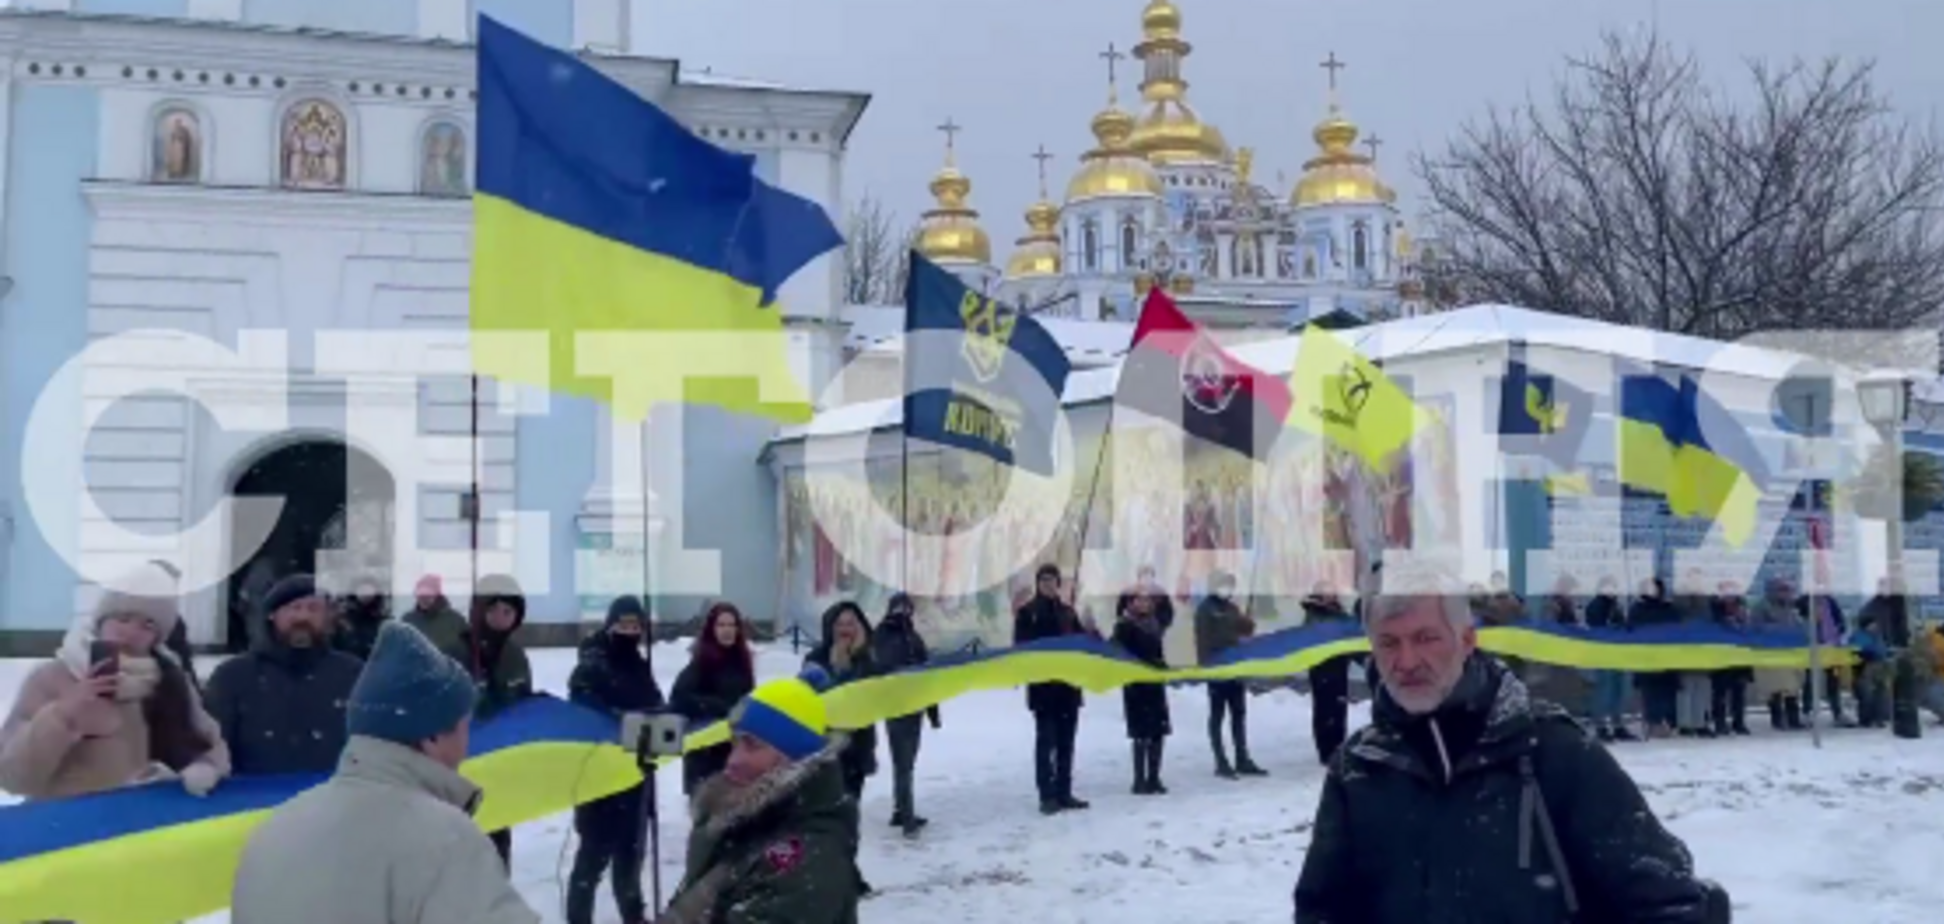 Михайловская и Софийская площади соединились большим государственным флагом